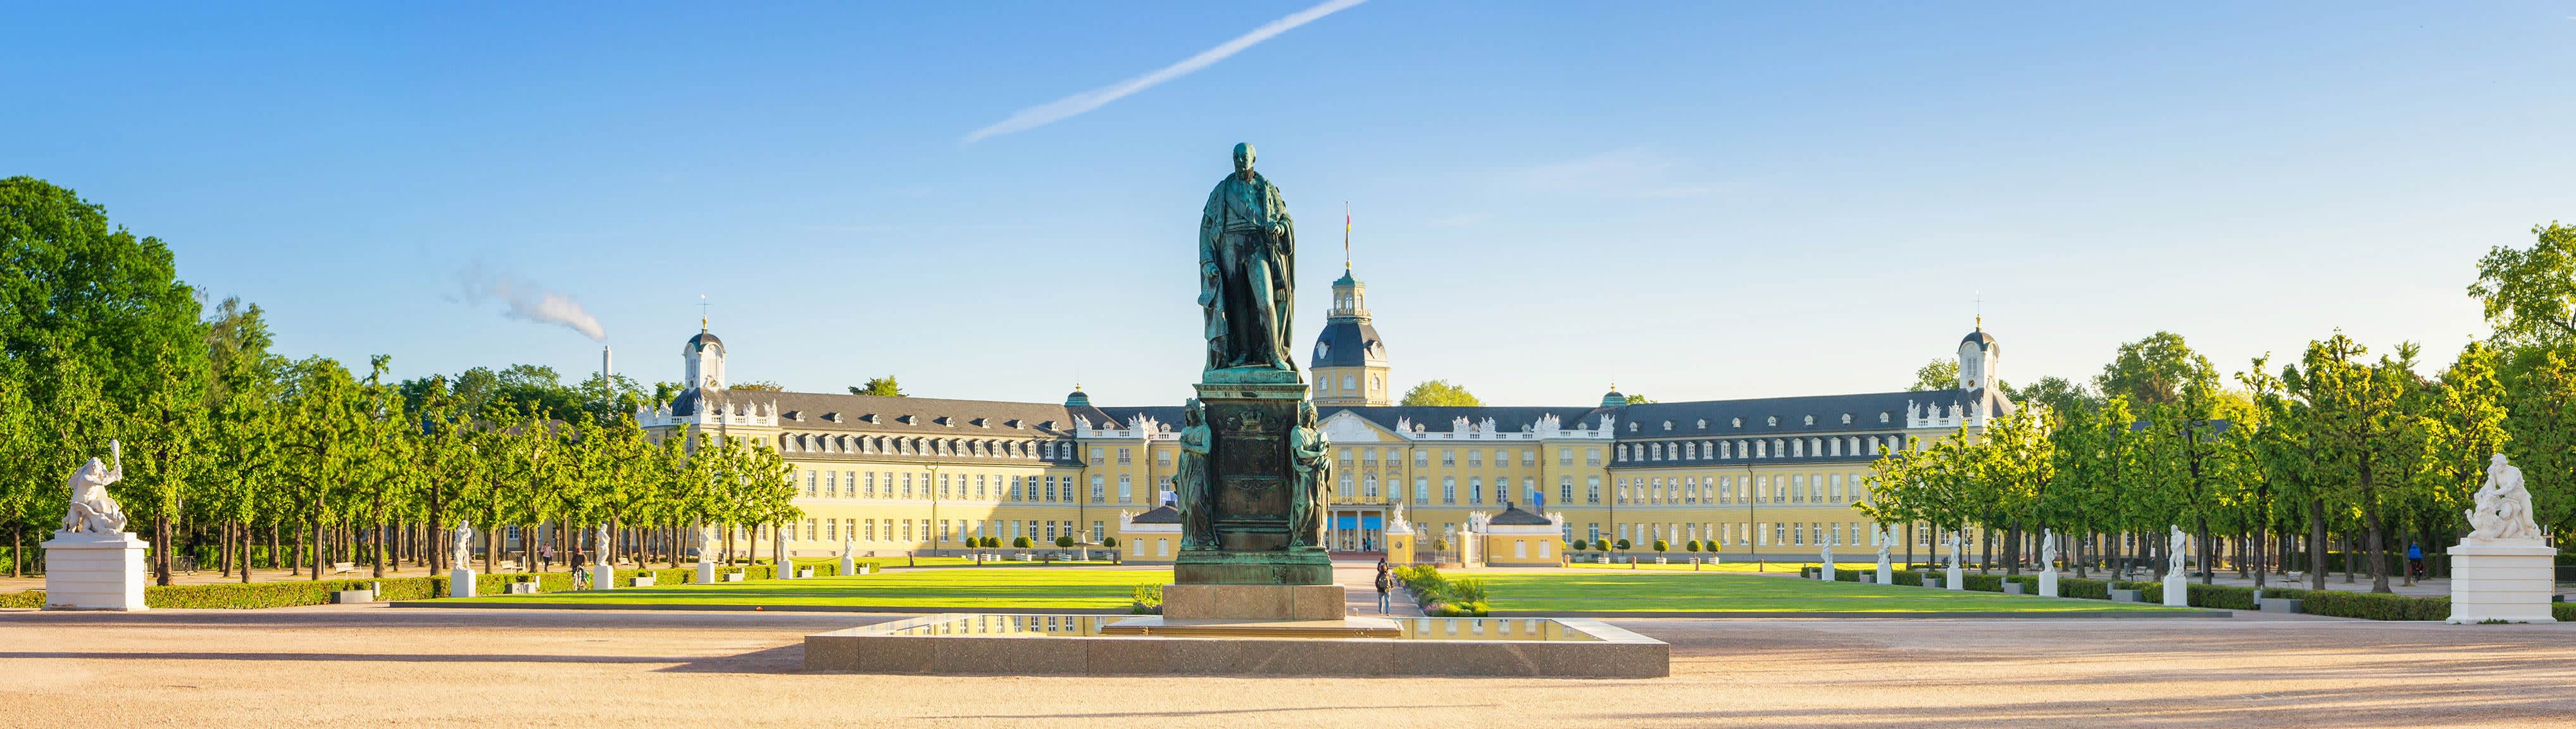 Das Schloss in Karlsruhe mit Statue im Vordergrund